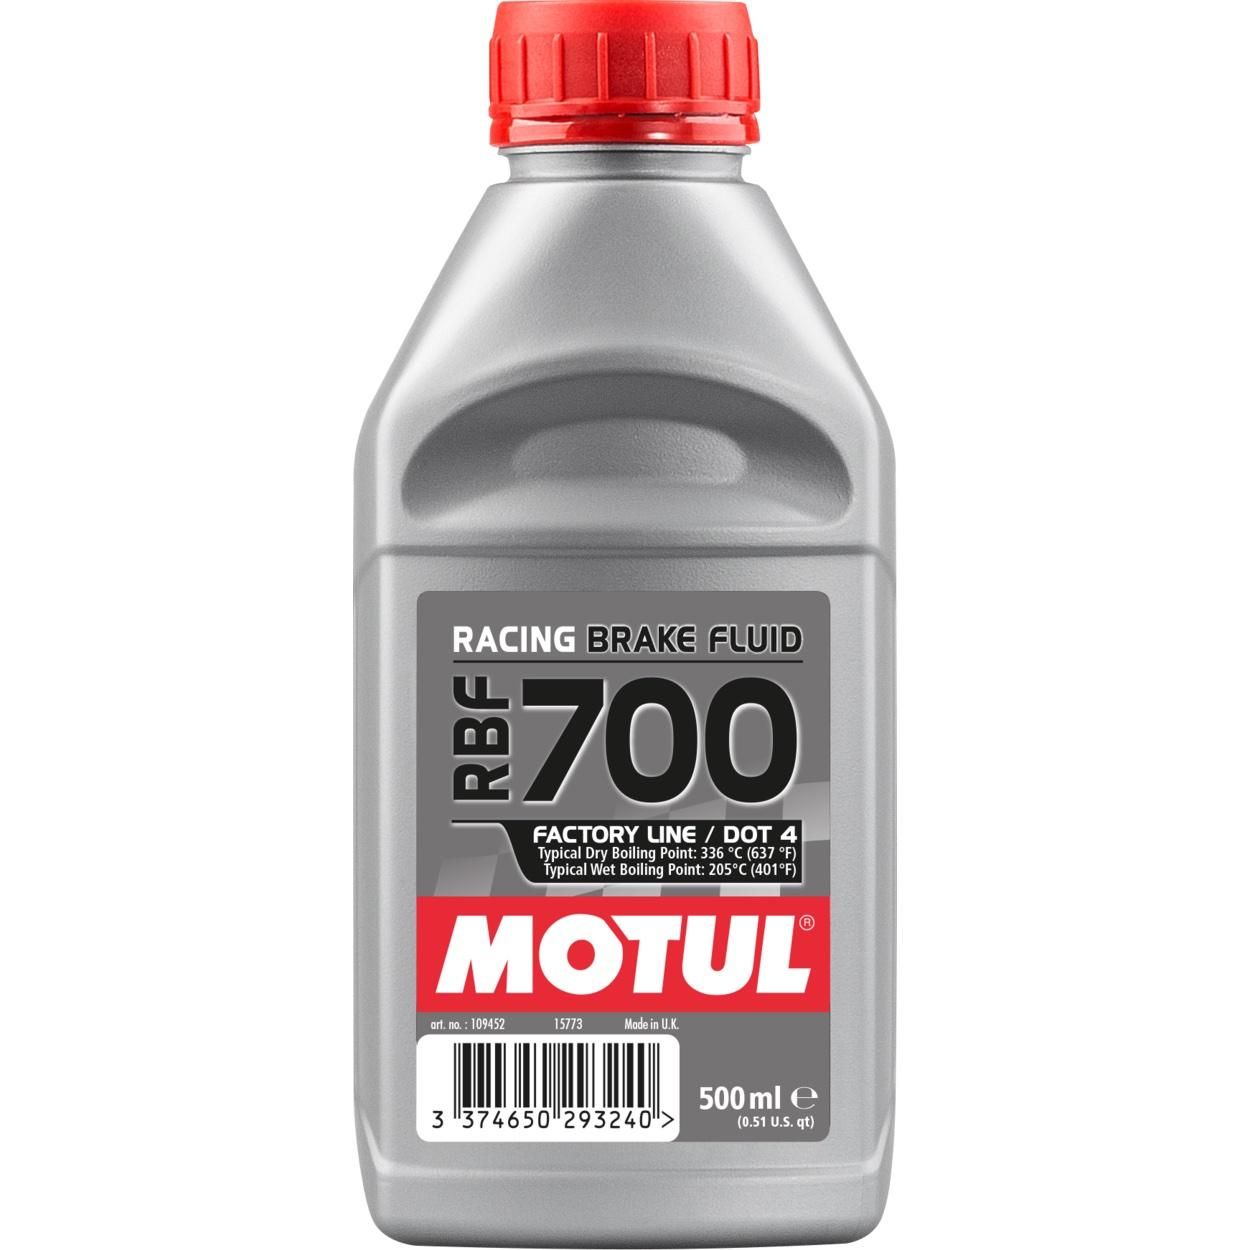 Тормозная жидкость MOTUL RBF 700 Factory Line, 0.5 литра (847305 / 109452)